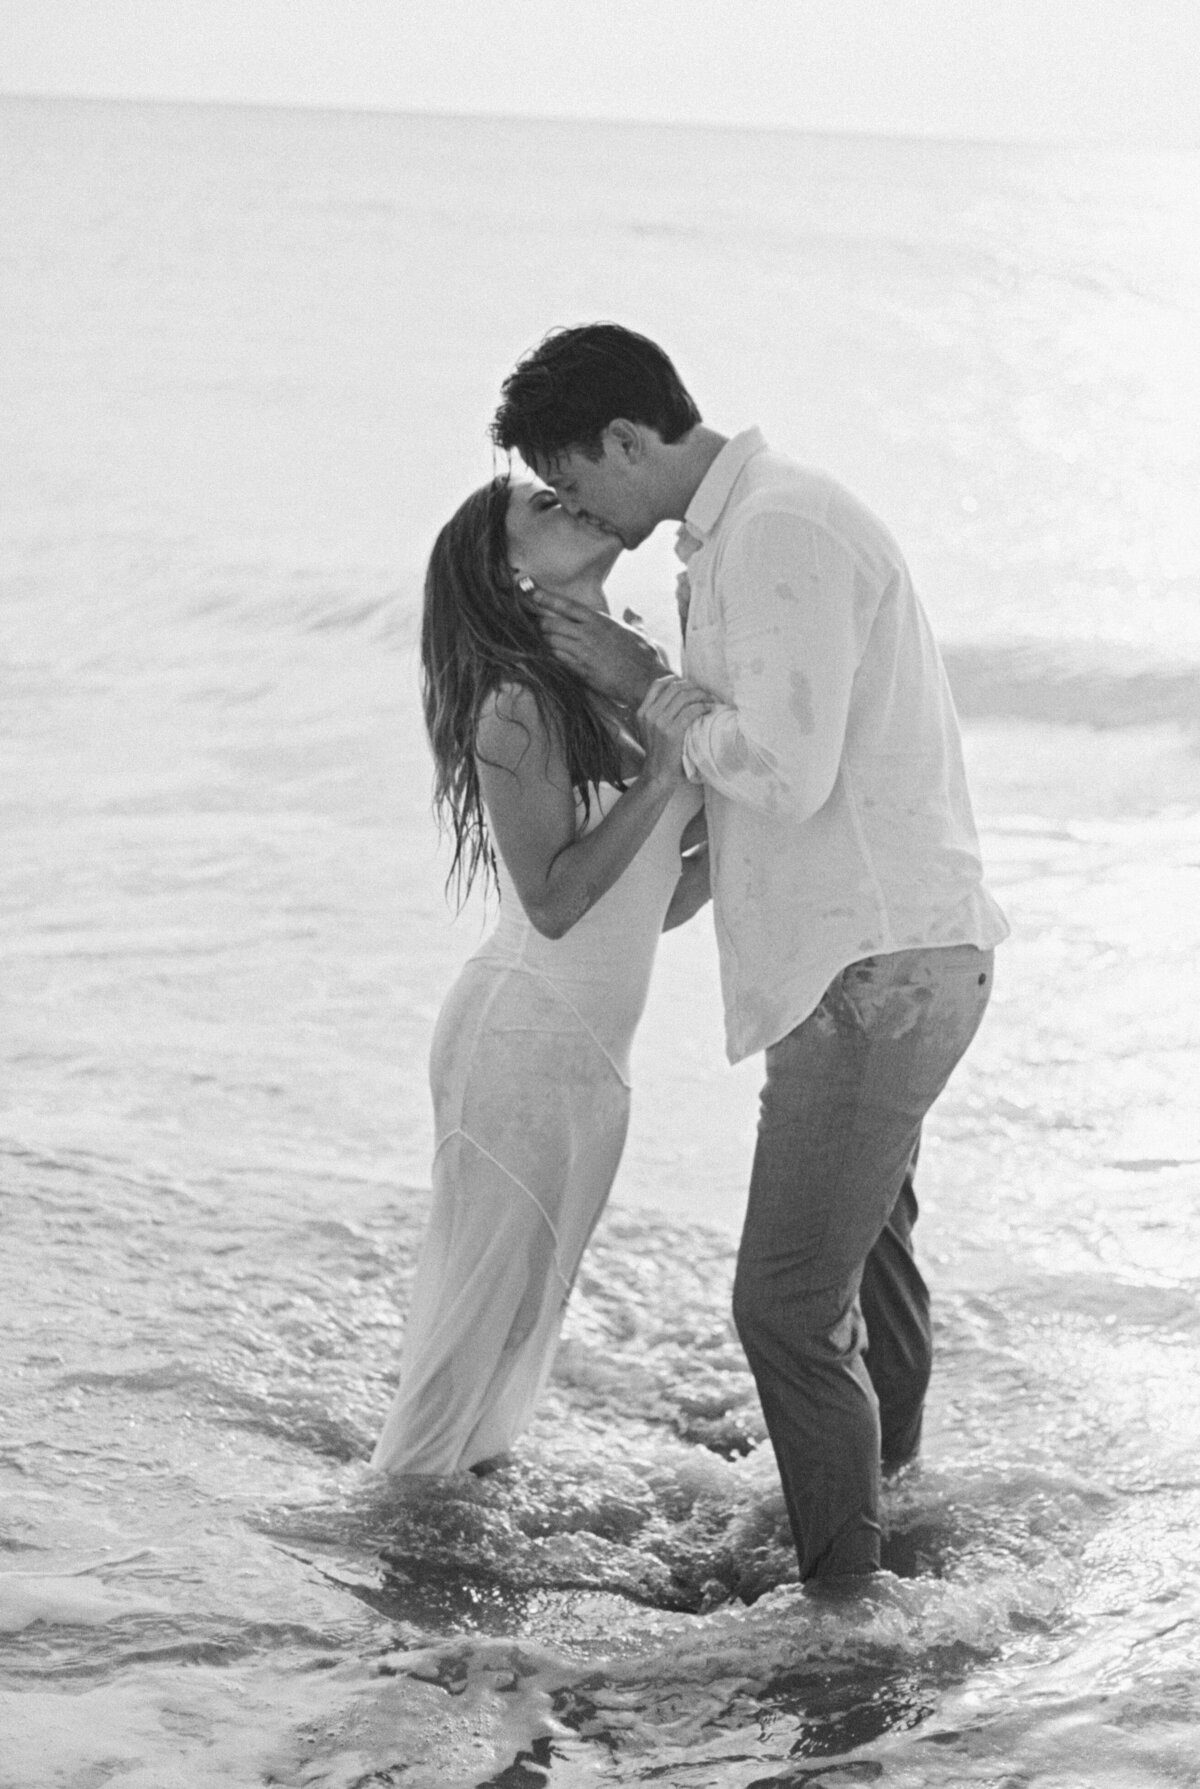 Washington DC Wedding Photographer Costola Photography - Virginia Beach Sunrise Engagement Session _ Hannah & David 114